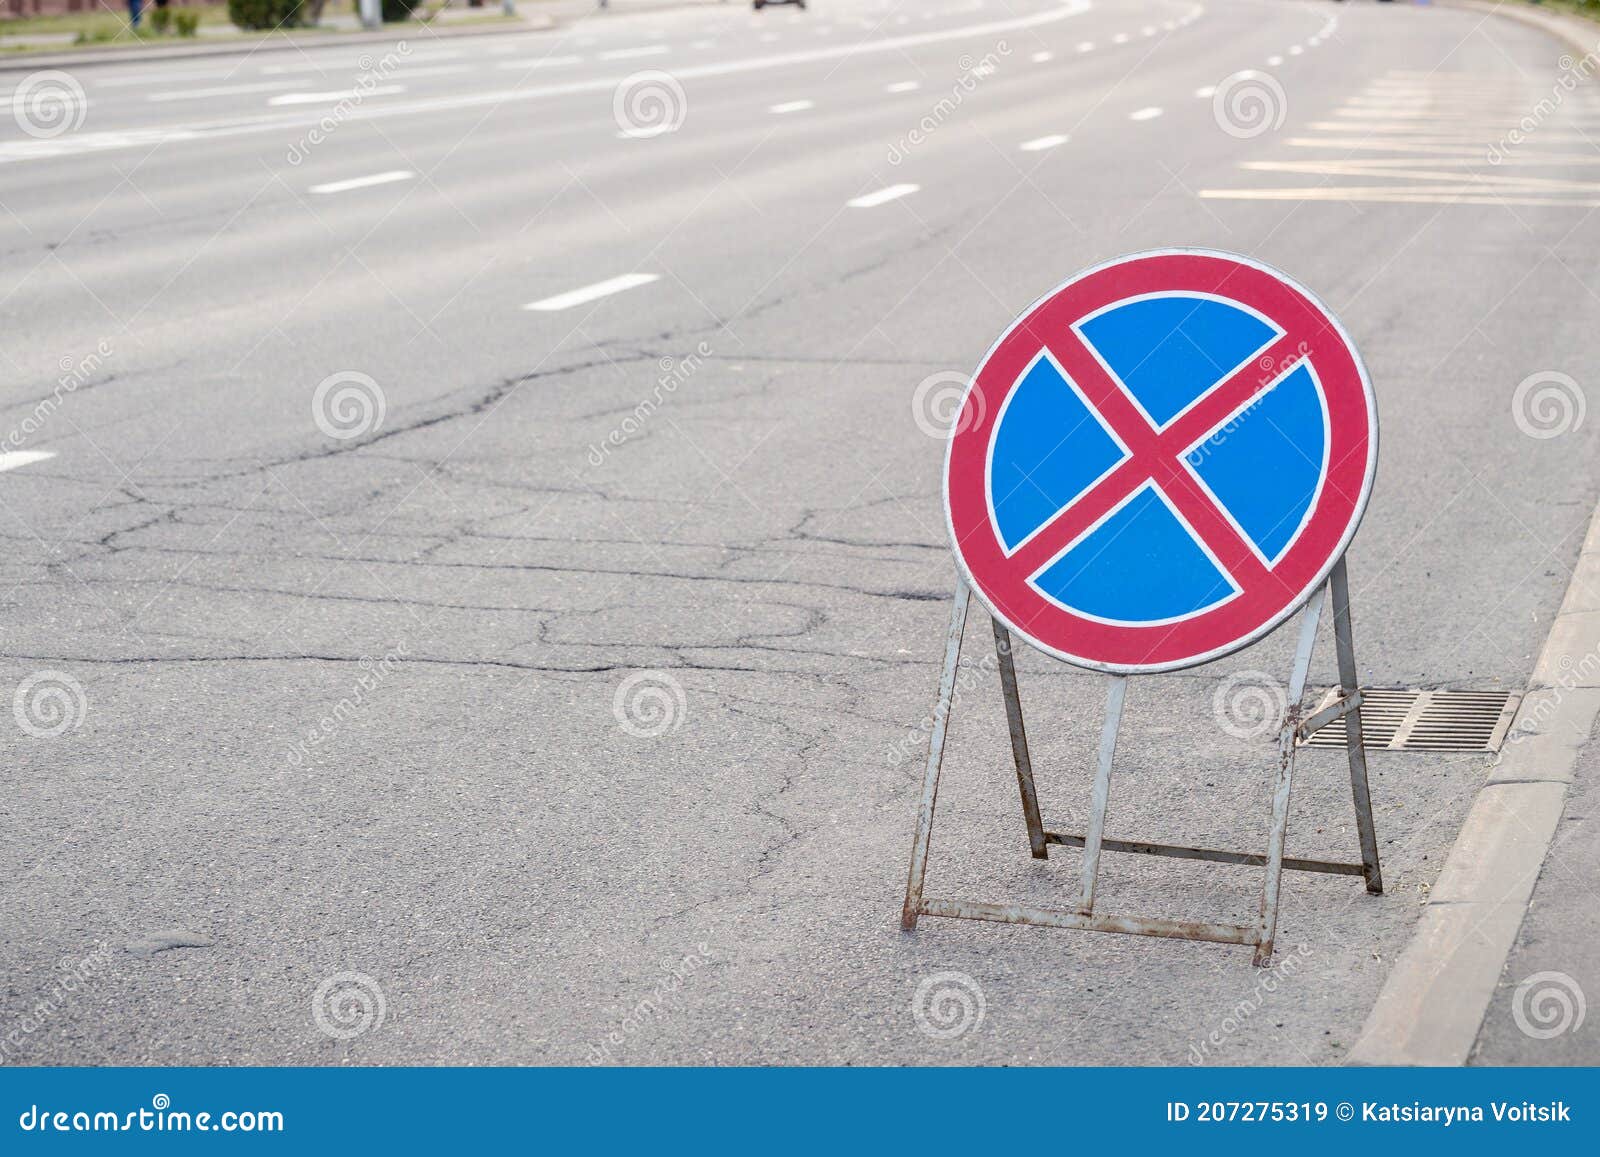 Hãy khám phá hình ảnh về biển báo giao thông để trang bị kiến thức về luật lệ đường phố và an toàn giao thông trên đường đi của bạn.